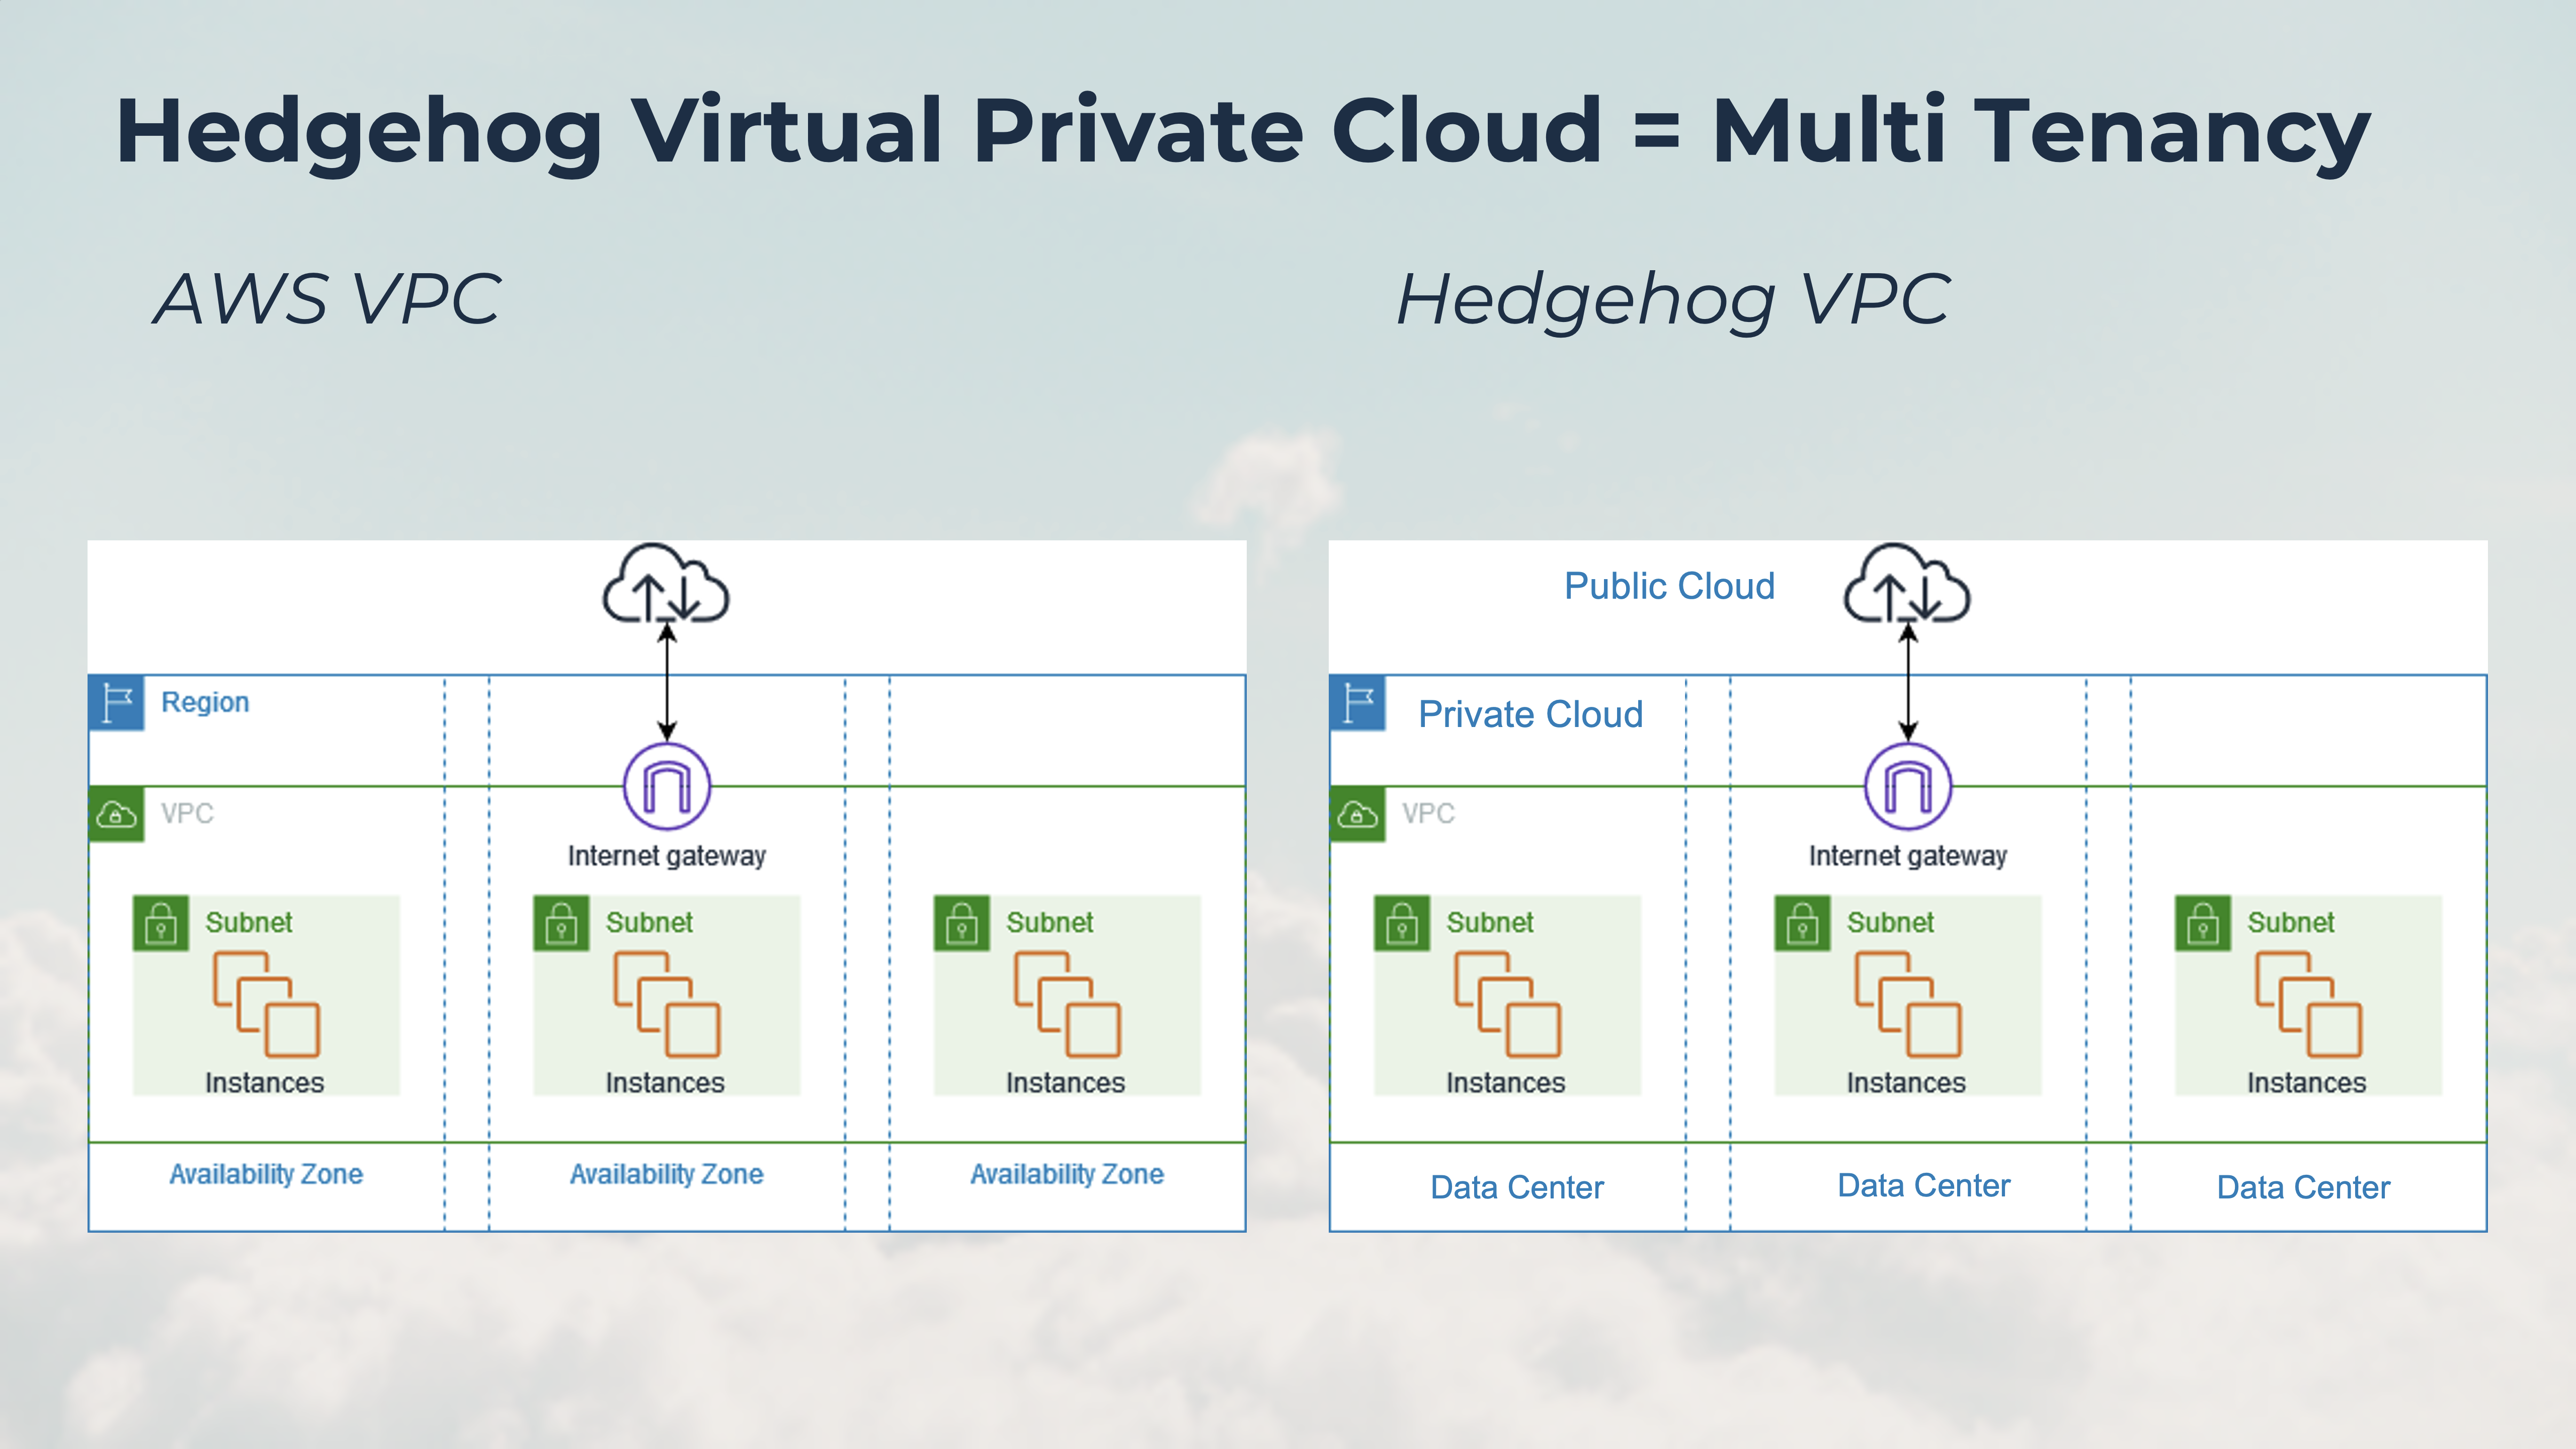 ヘッジホッグ仮想プライベートクラウドとAWS仮想プライベートクラウドの比較図。Hedgehog VPCはAWS VPCと同じですが、データセンターがアベイラビリティゾーンと同じプライベートクラウド上で動作し、VPCゲートウェイがプライベートクラウドとパブリッククラウドを接続します。